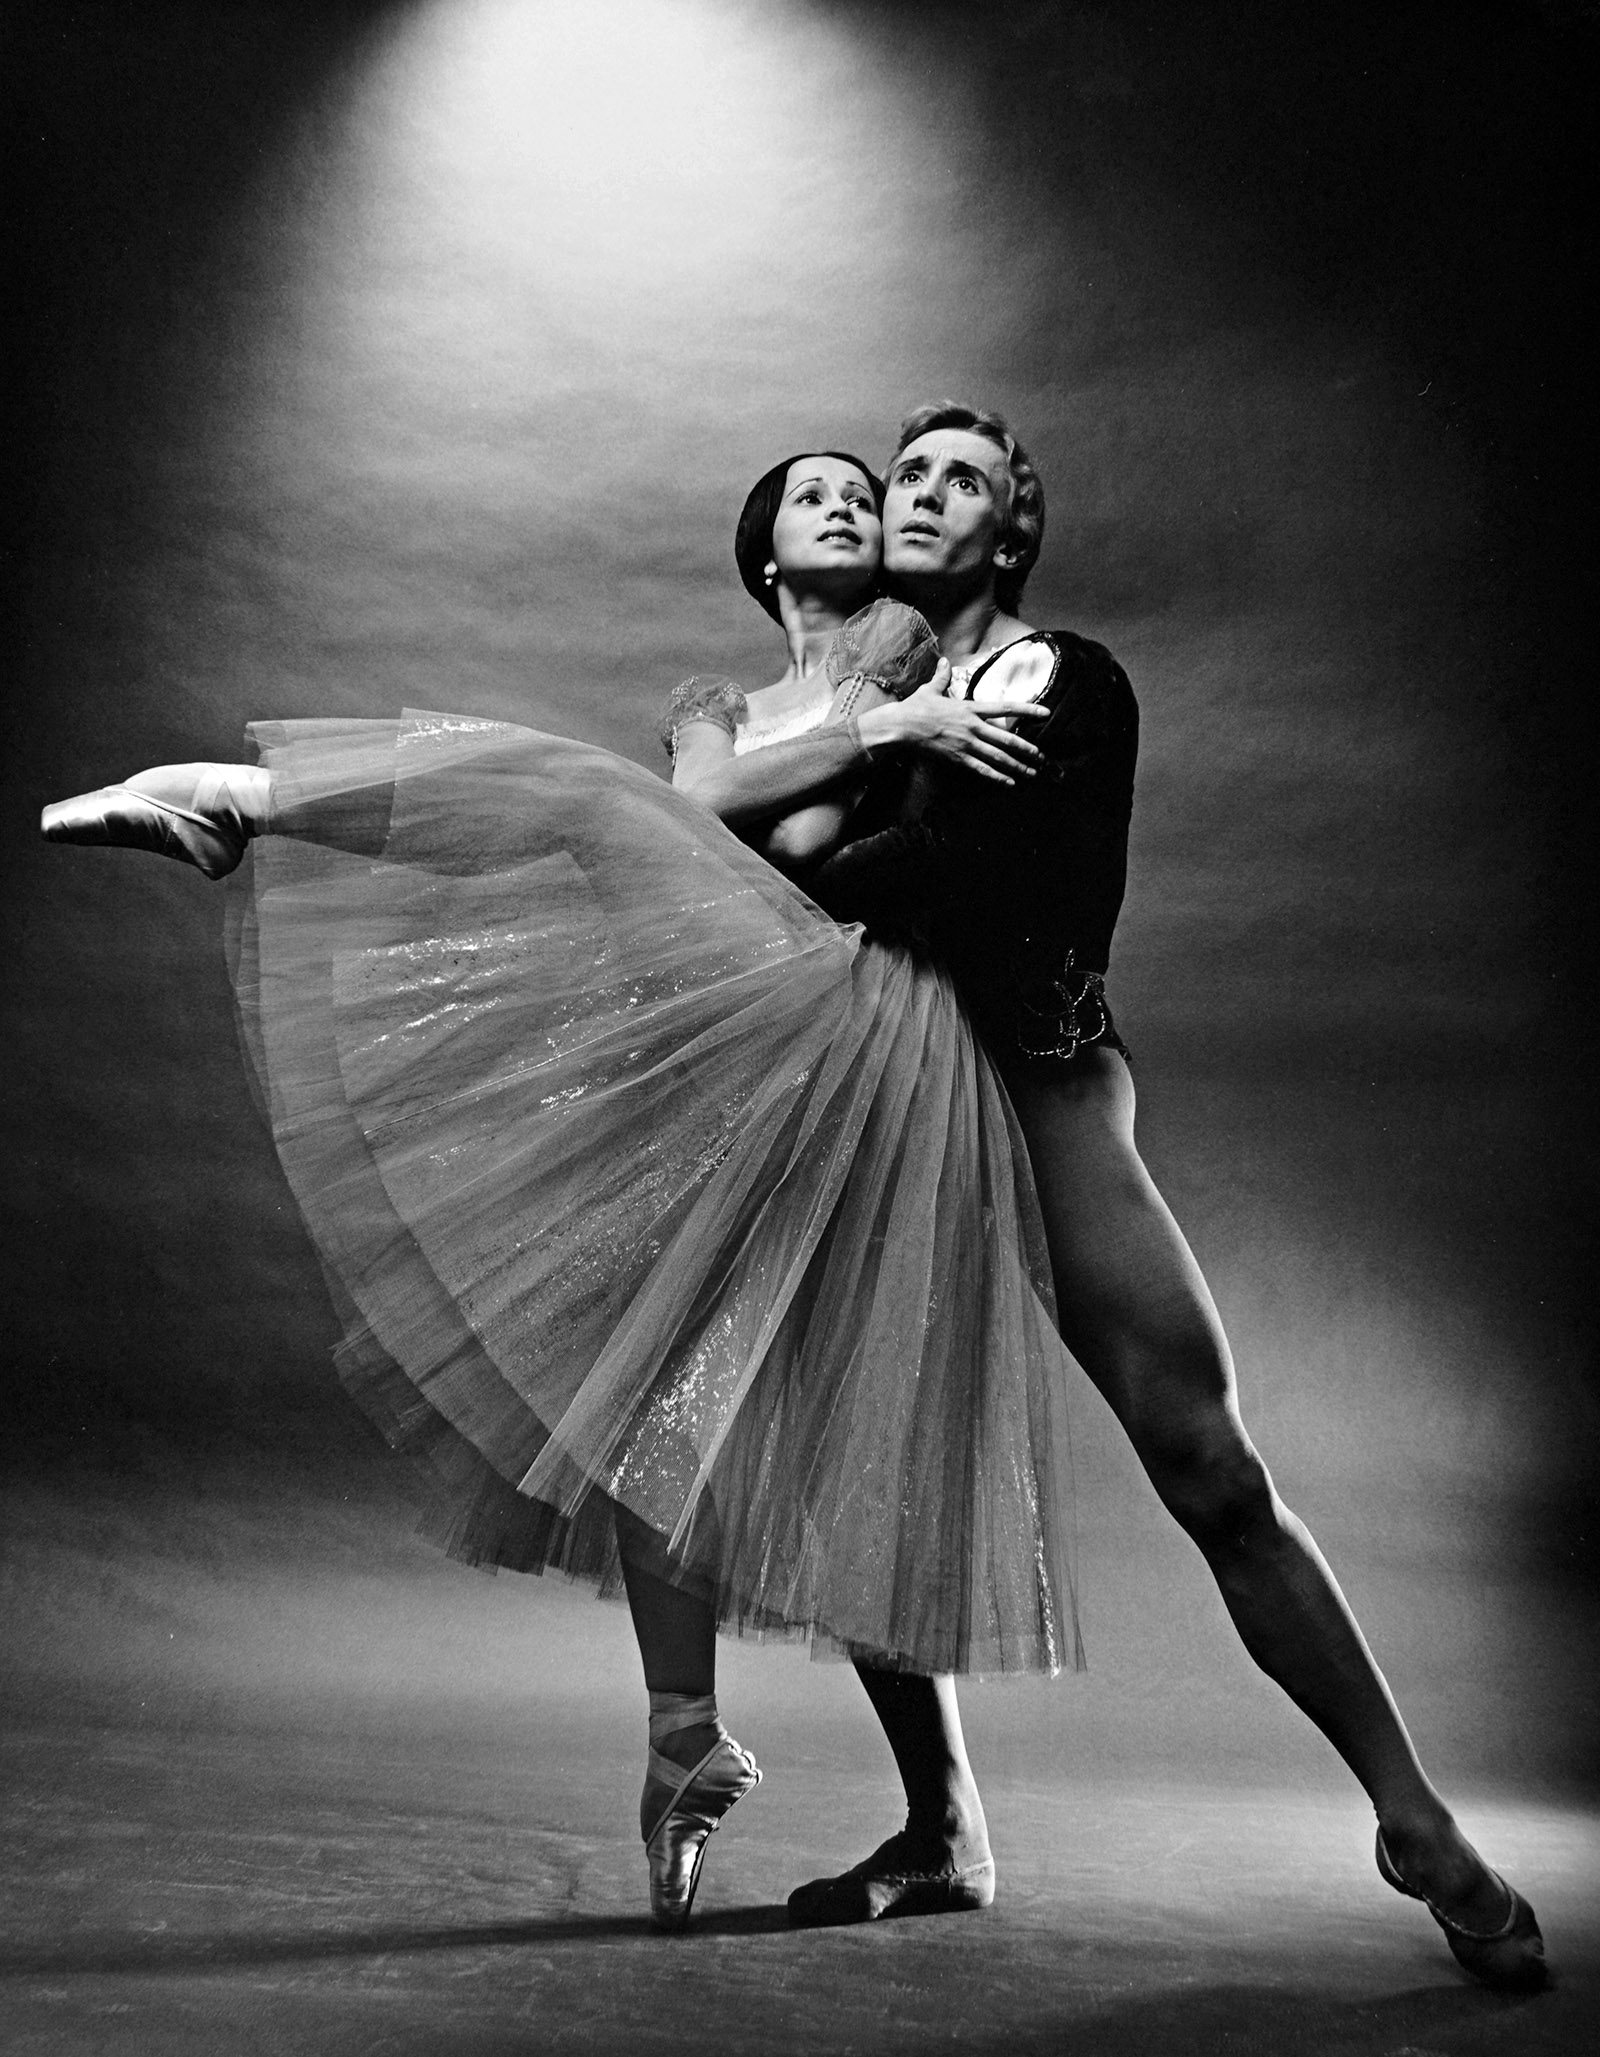 Bolshoi Ballet dancers